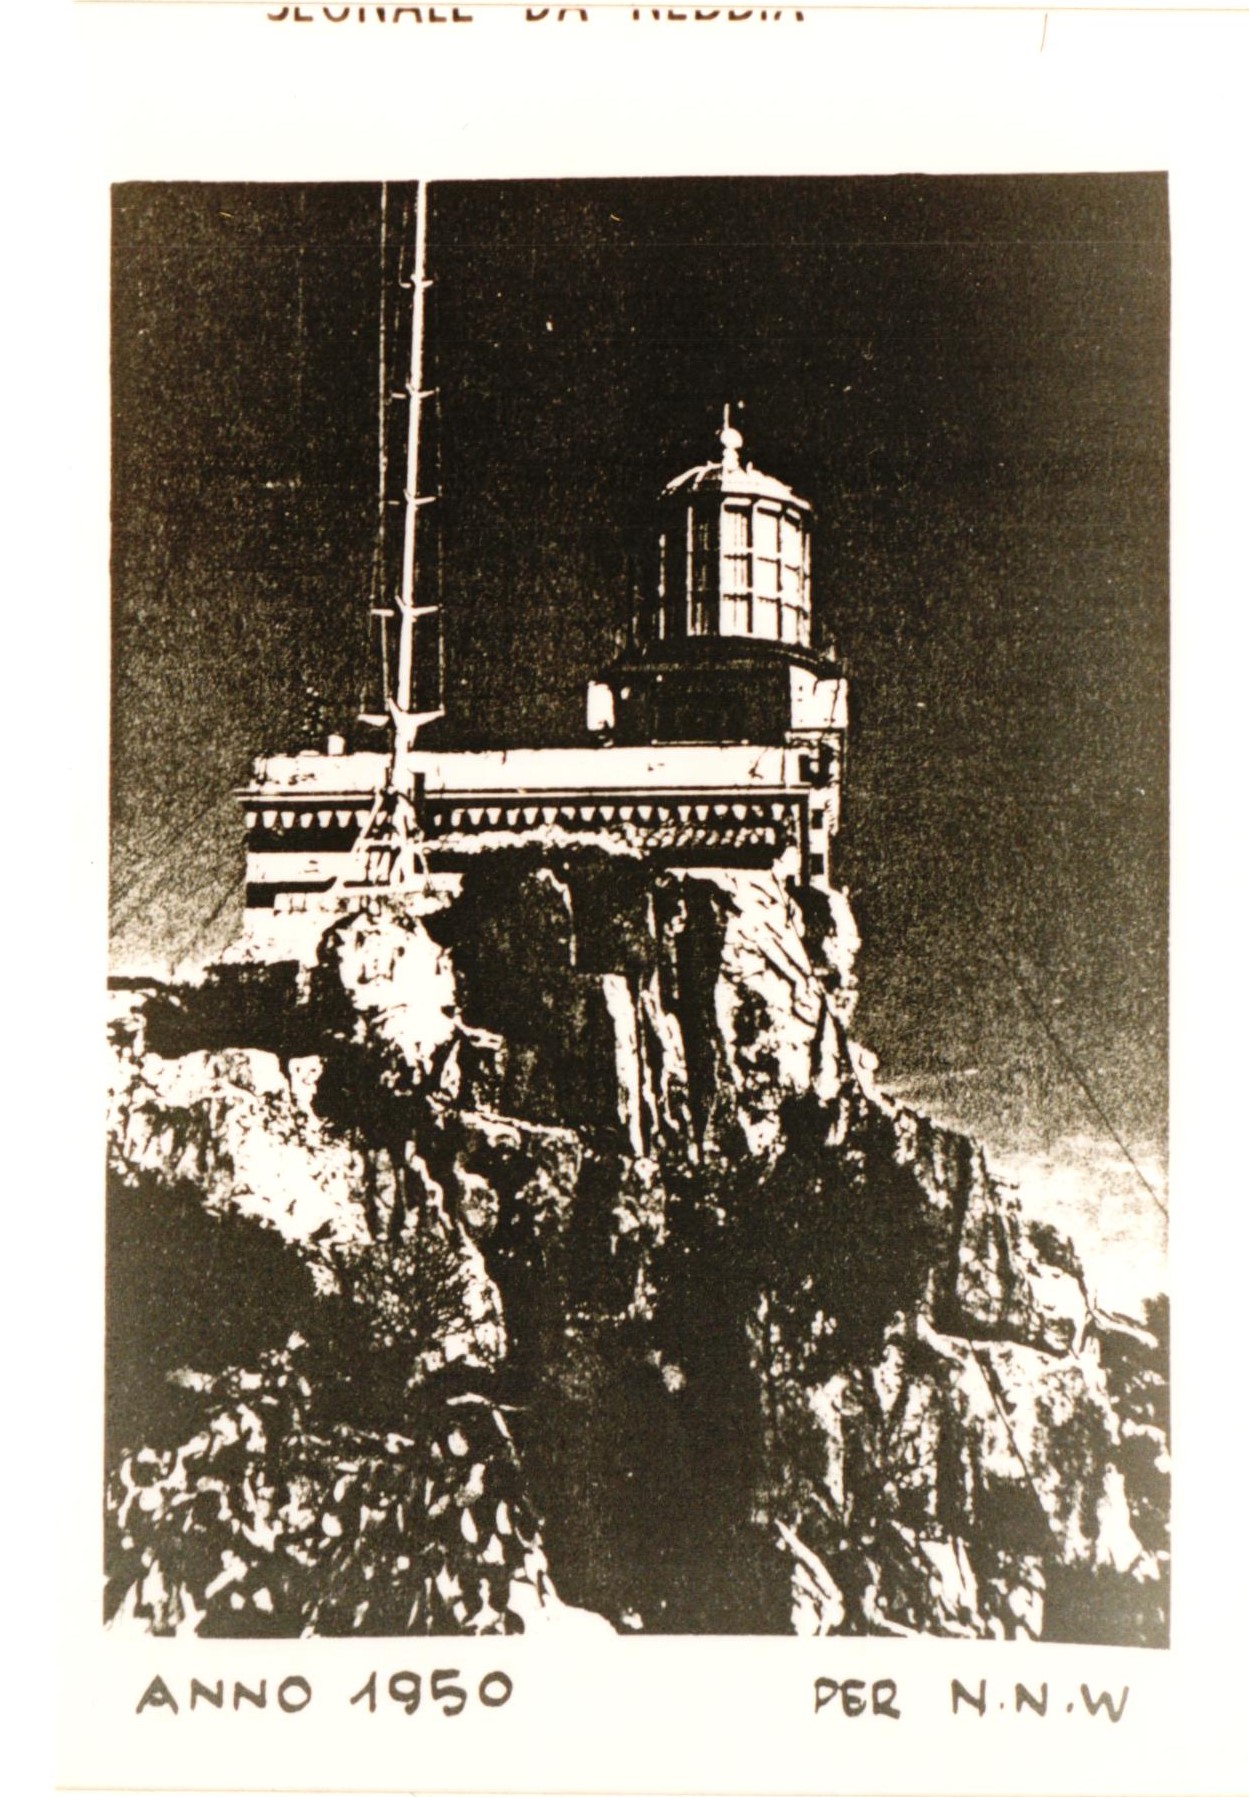 Faro di capo bellavista (faro, di altura, di segnalamento marittimo, di atterraggio e di scoperta)